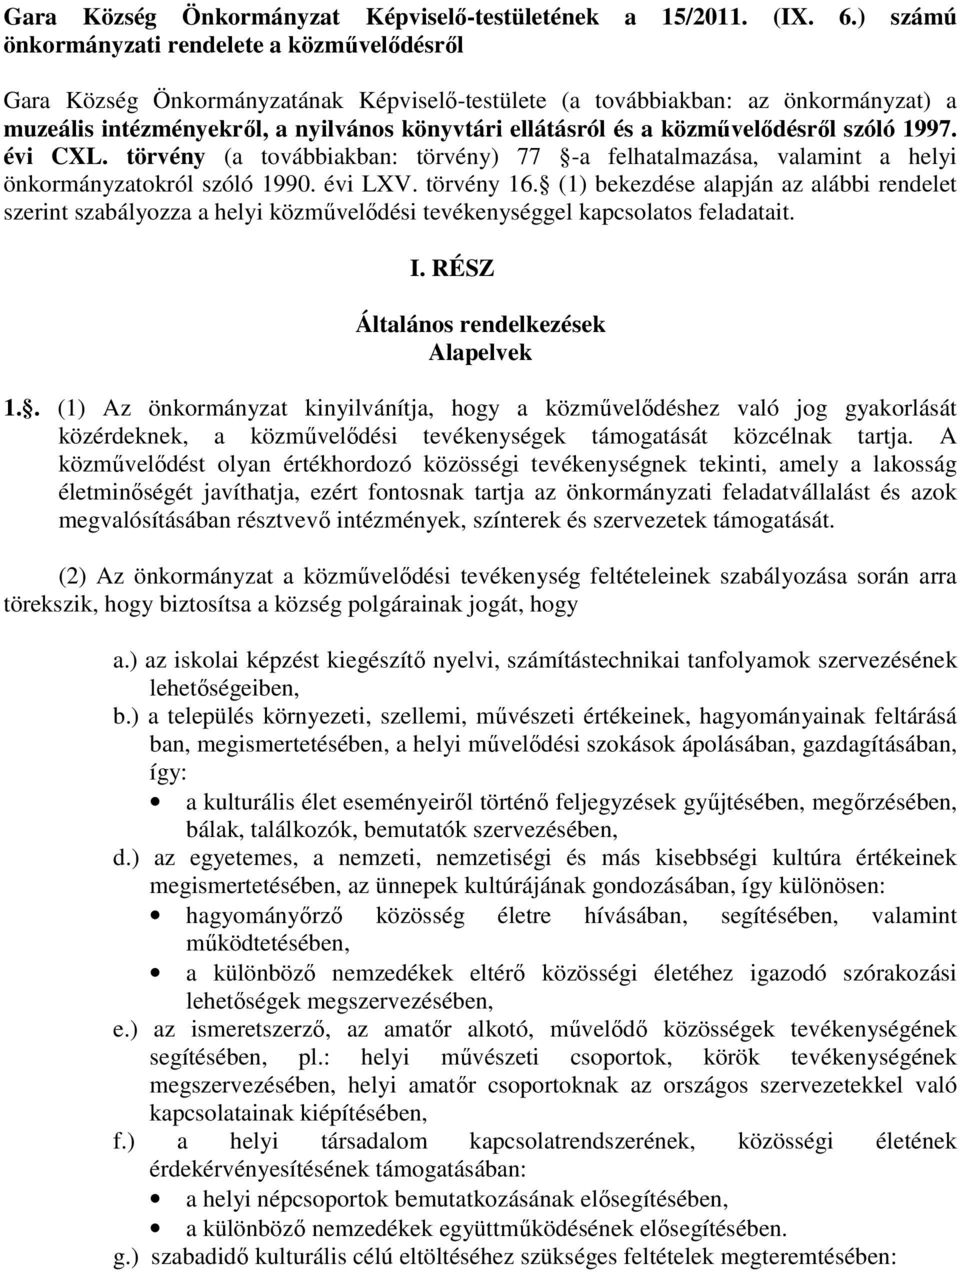 közmővelıdésrıl szóló 1997. évi CXL. törvény (a továbbiakban: törvény) 77 -a felhatalmazása, valamint a helyi önkormányzatokról szóló 1990. évi LXV. törvény 16.